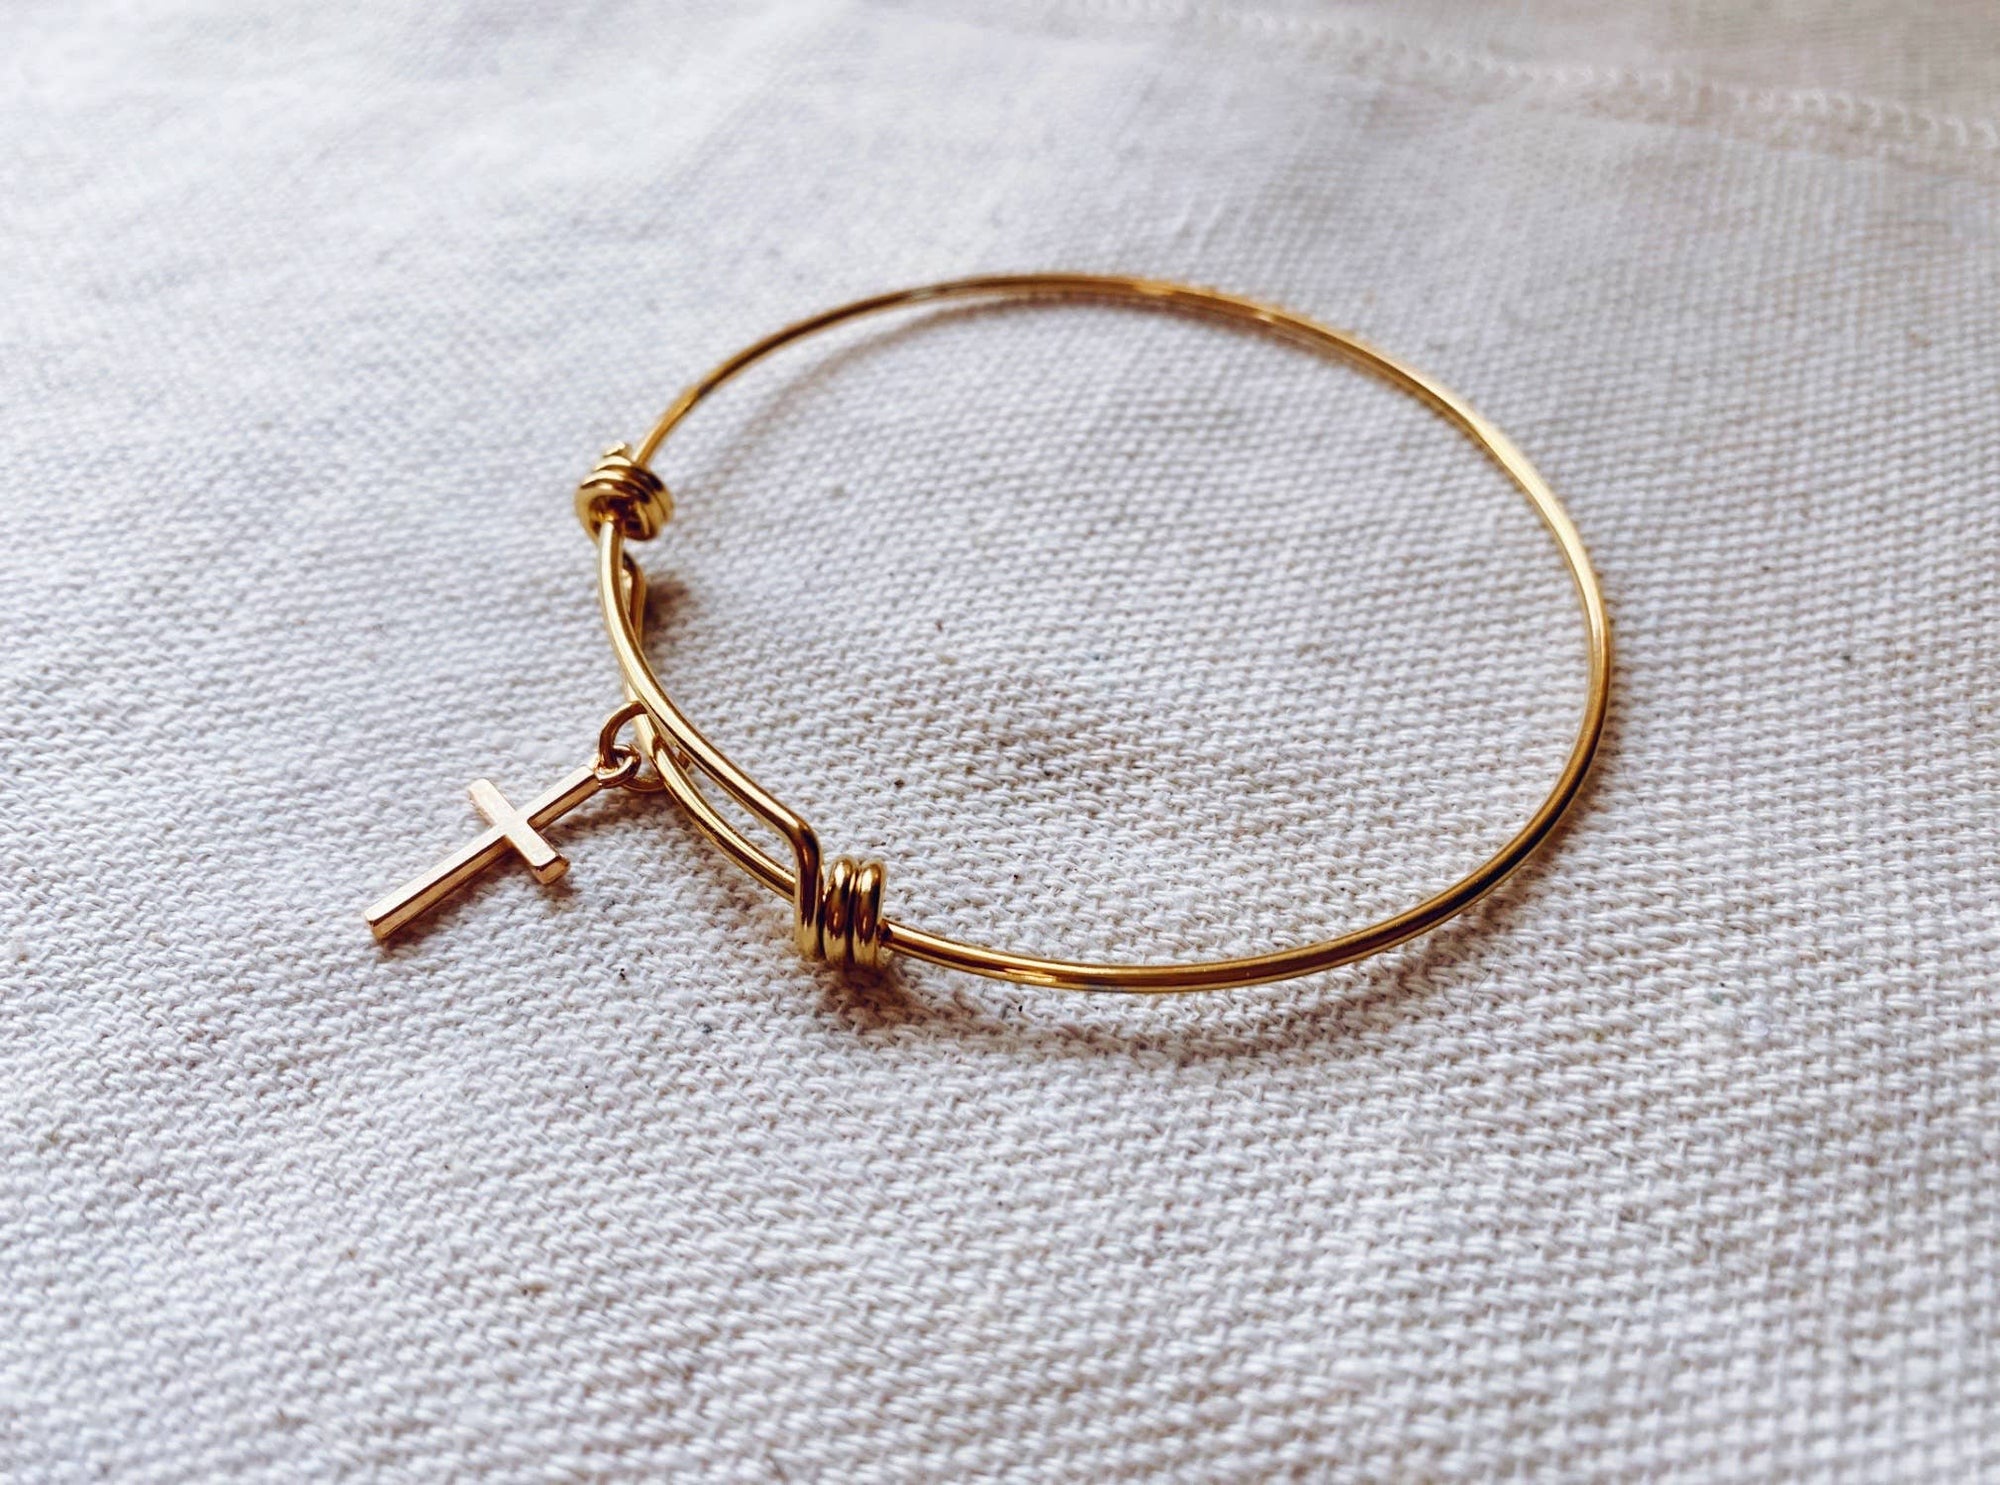 Hepburn Gold Cross Bangle Bracelet